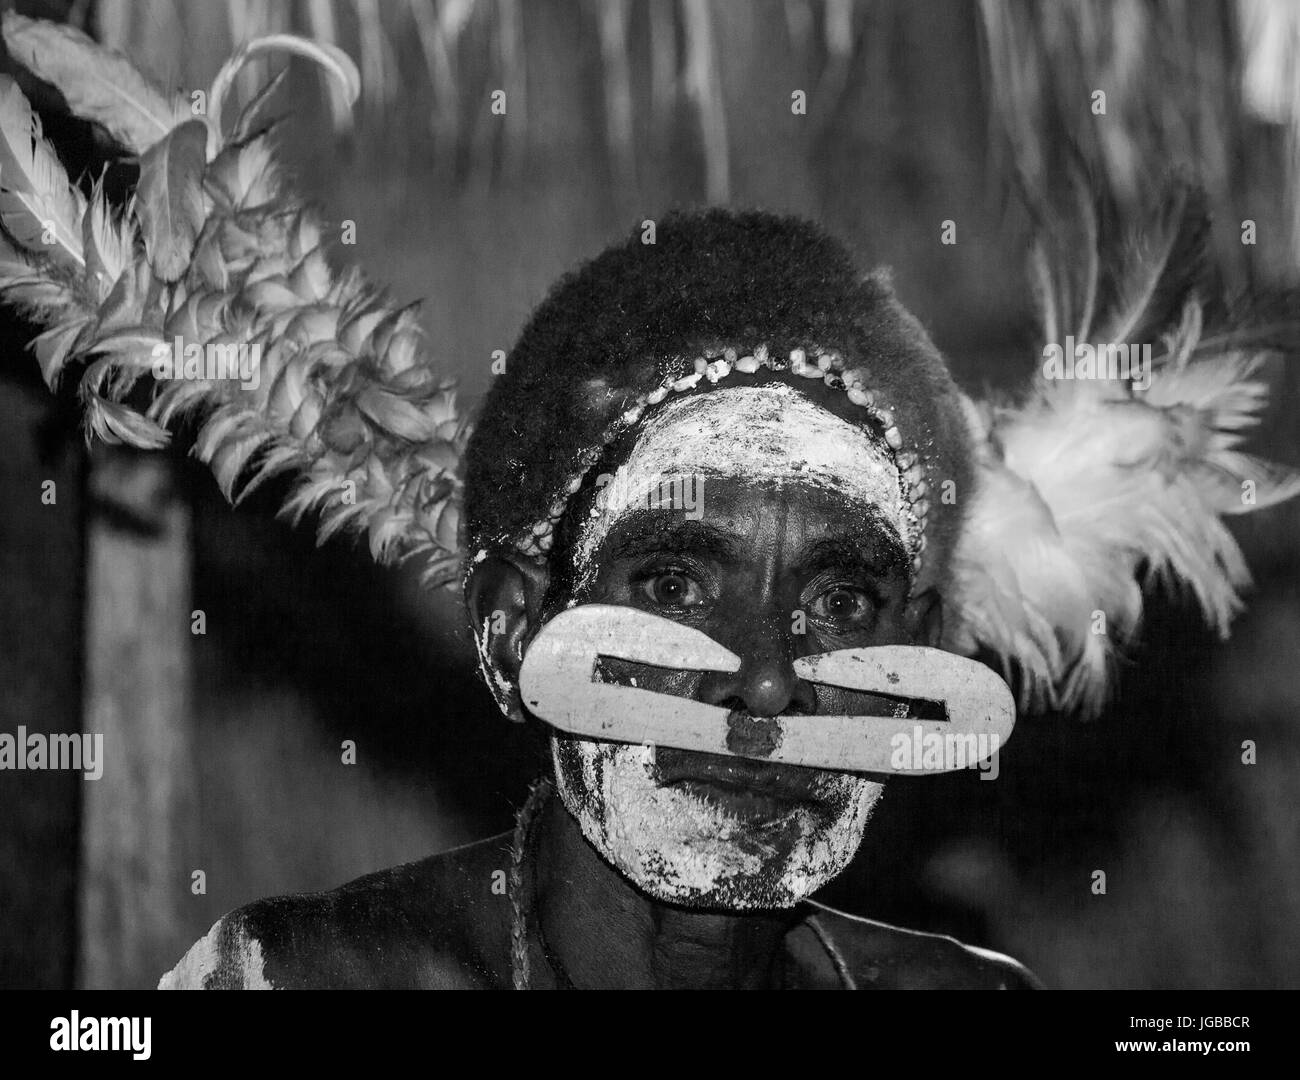 Indonesien, IRIAN JAYA, ASMAT Provinz, JOW Dorf - Juni 12: Porträt eines Kriegers Asmat-Stammes in traditionelle Kopfbedeckung. Stockfoto